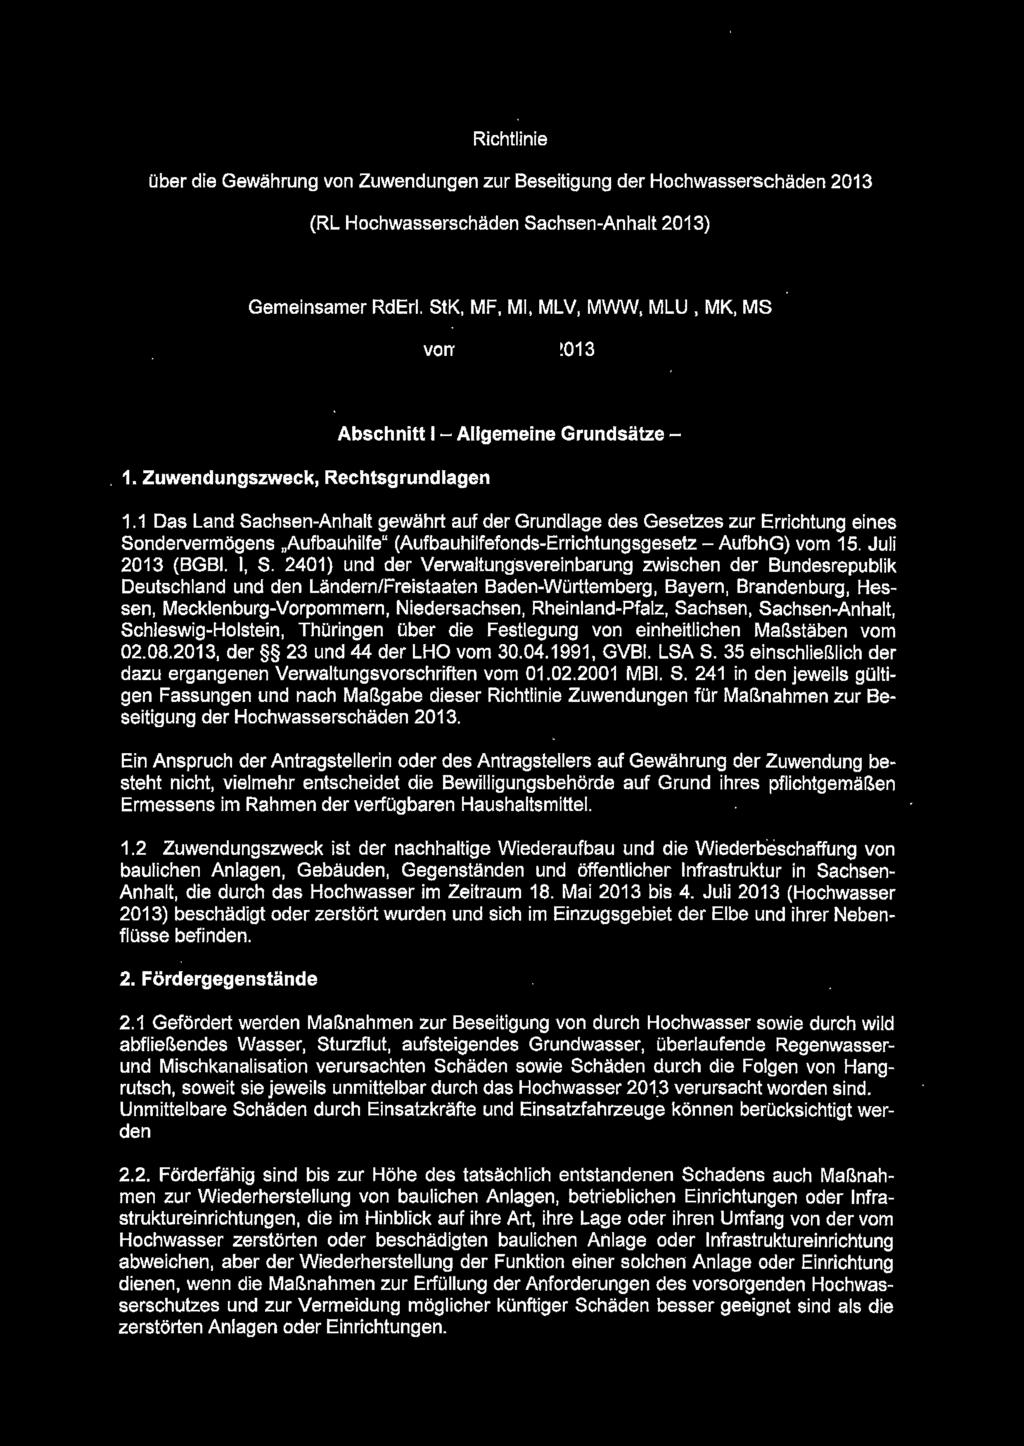 1 Das Land Sachsen-Anhalt gewährt auf der Grundlage des Gesetzes zur Errichtung eines Sondervermögens "Aufbauhilfe" (Aufbauhilfefonds-Errichtungsgesetz - AufbhG) vom 15. Juli 2013 (BGBI. I, S.